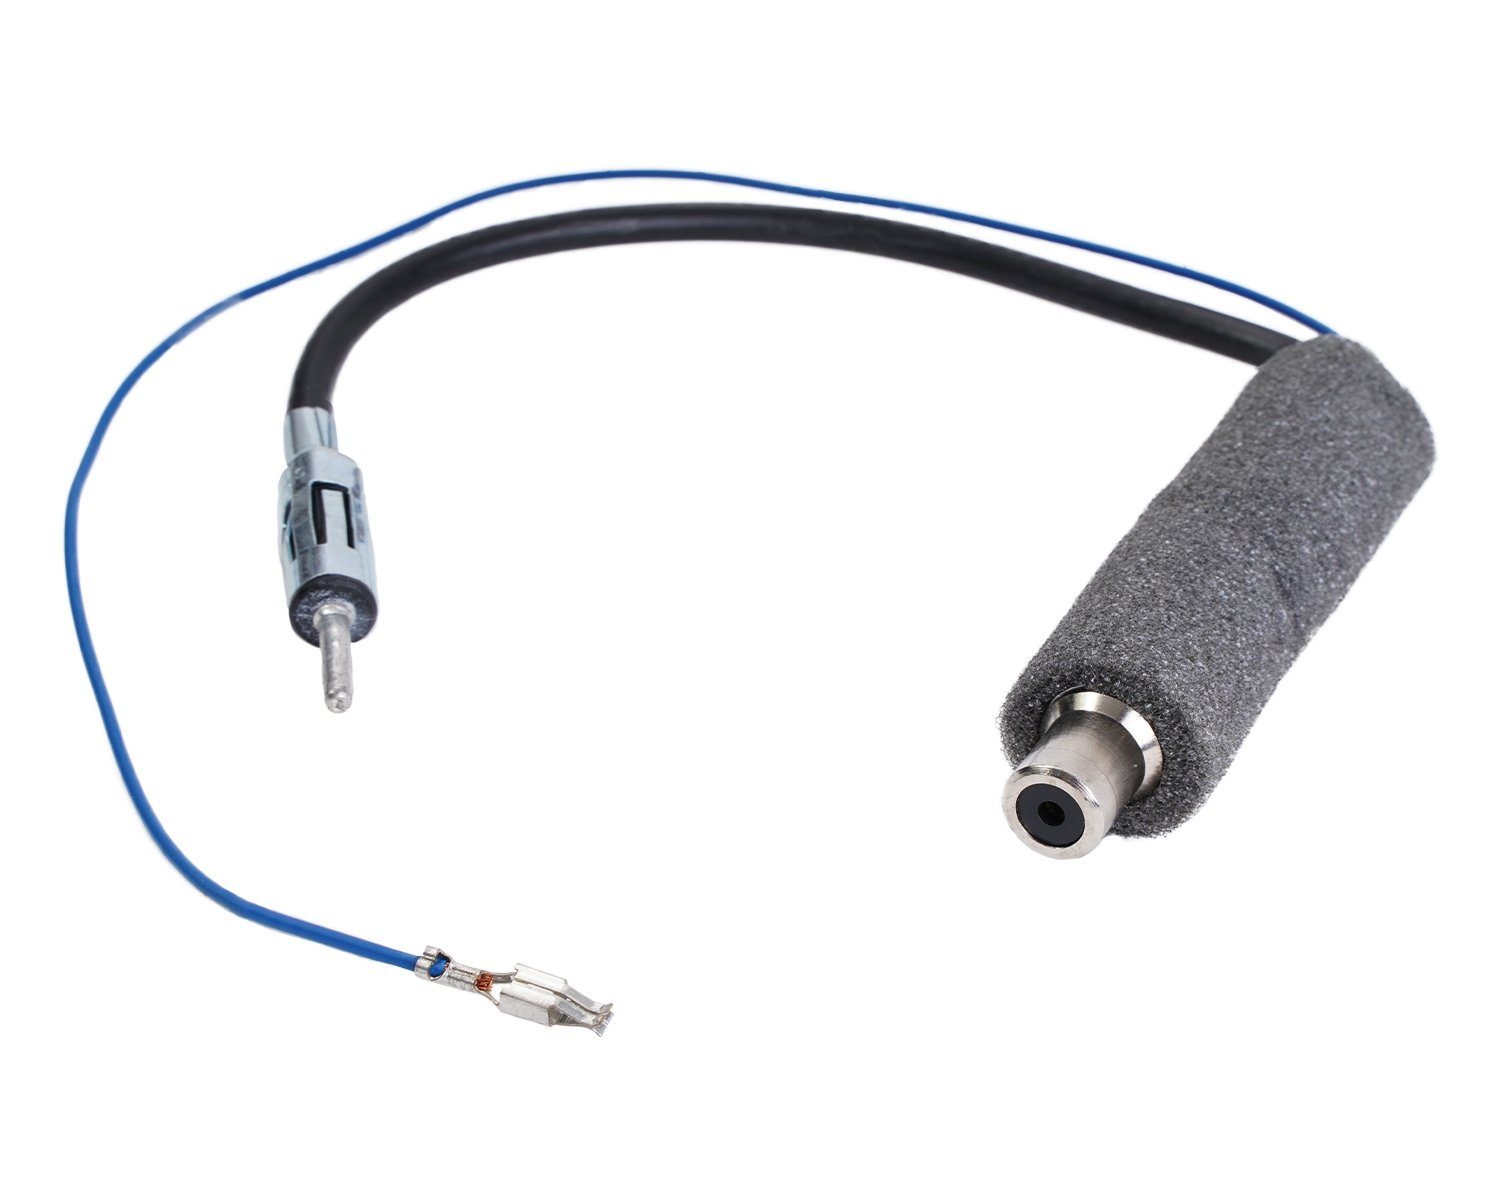 2 KFZ Autoradio Antenne Adapter ISO auf DIN Stecker Antennenadapter für VW  Radio